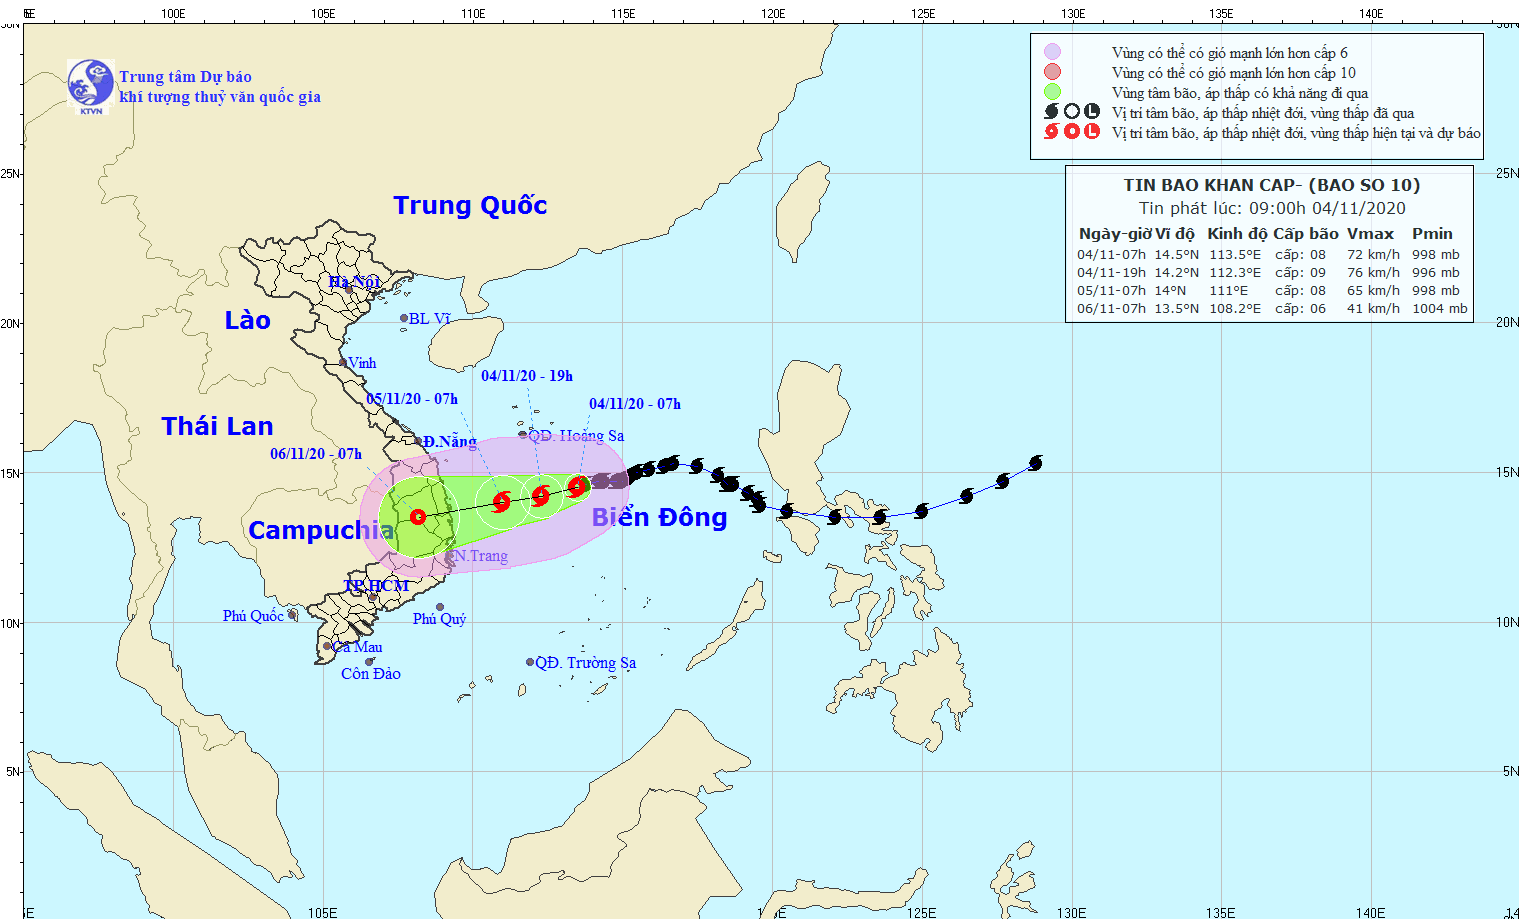 Bão số 10 đang cách Hoàng Sa khoảng 300km, hướng di chuyển của bão hướng vào vào Quảng Ngãi - Khánh Hòa nước ta.